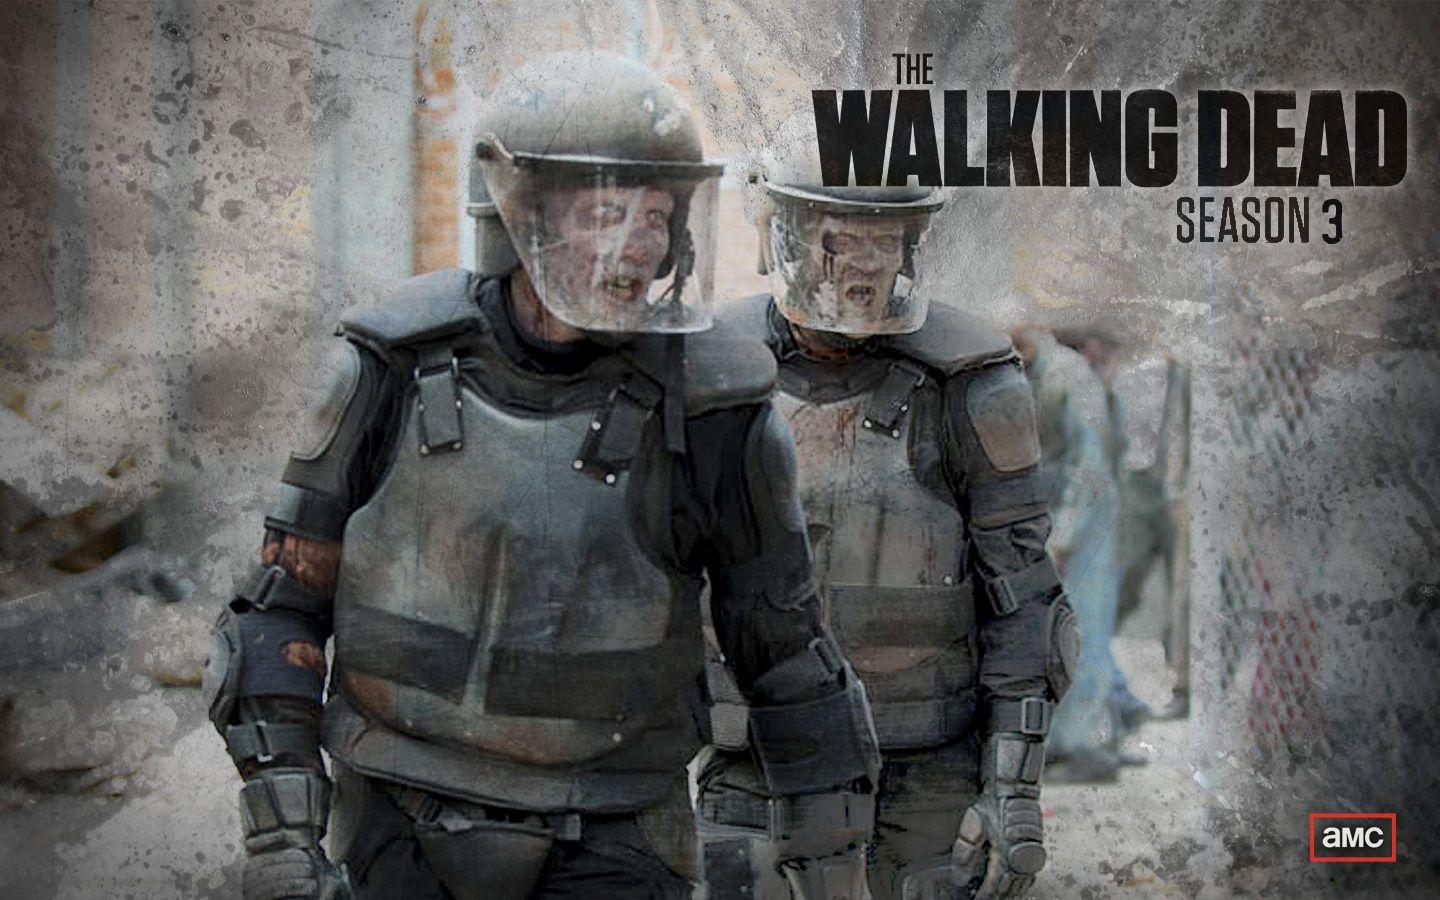 The Walking Dead Season 3 Wallpaper. Zombies